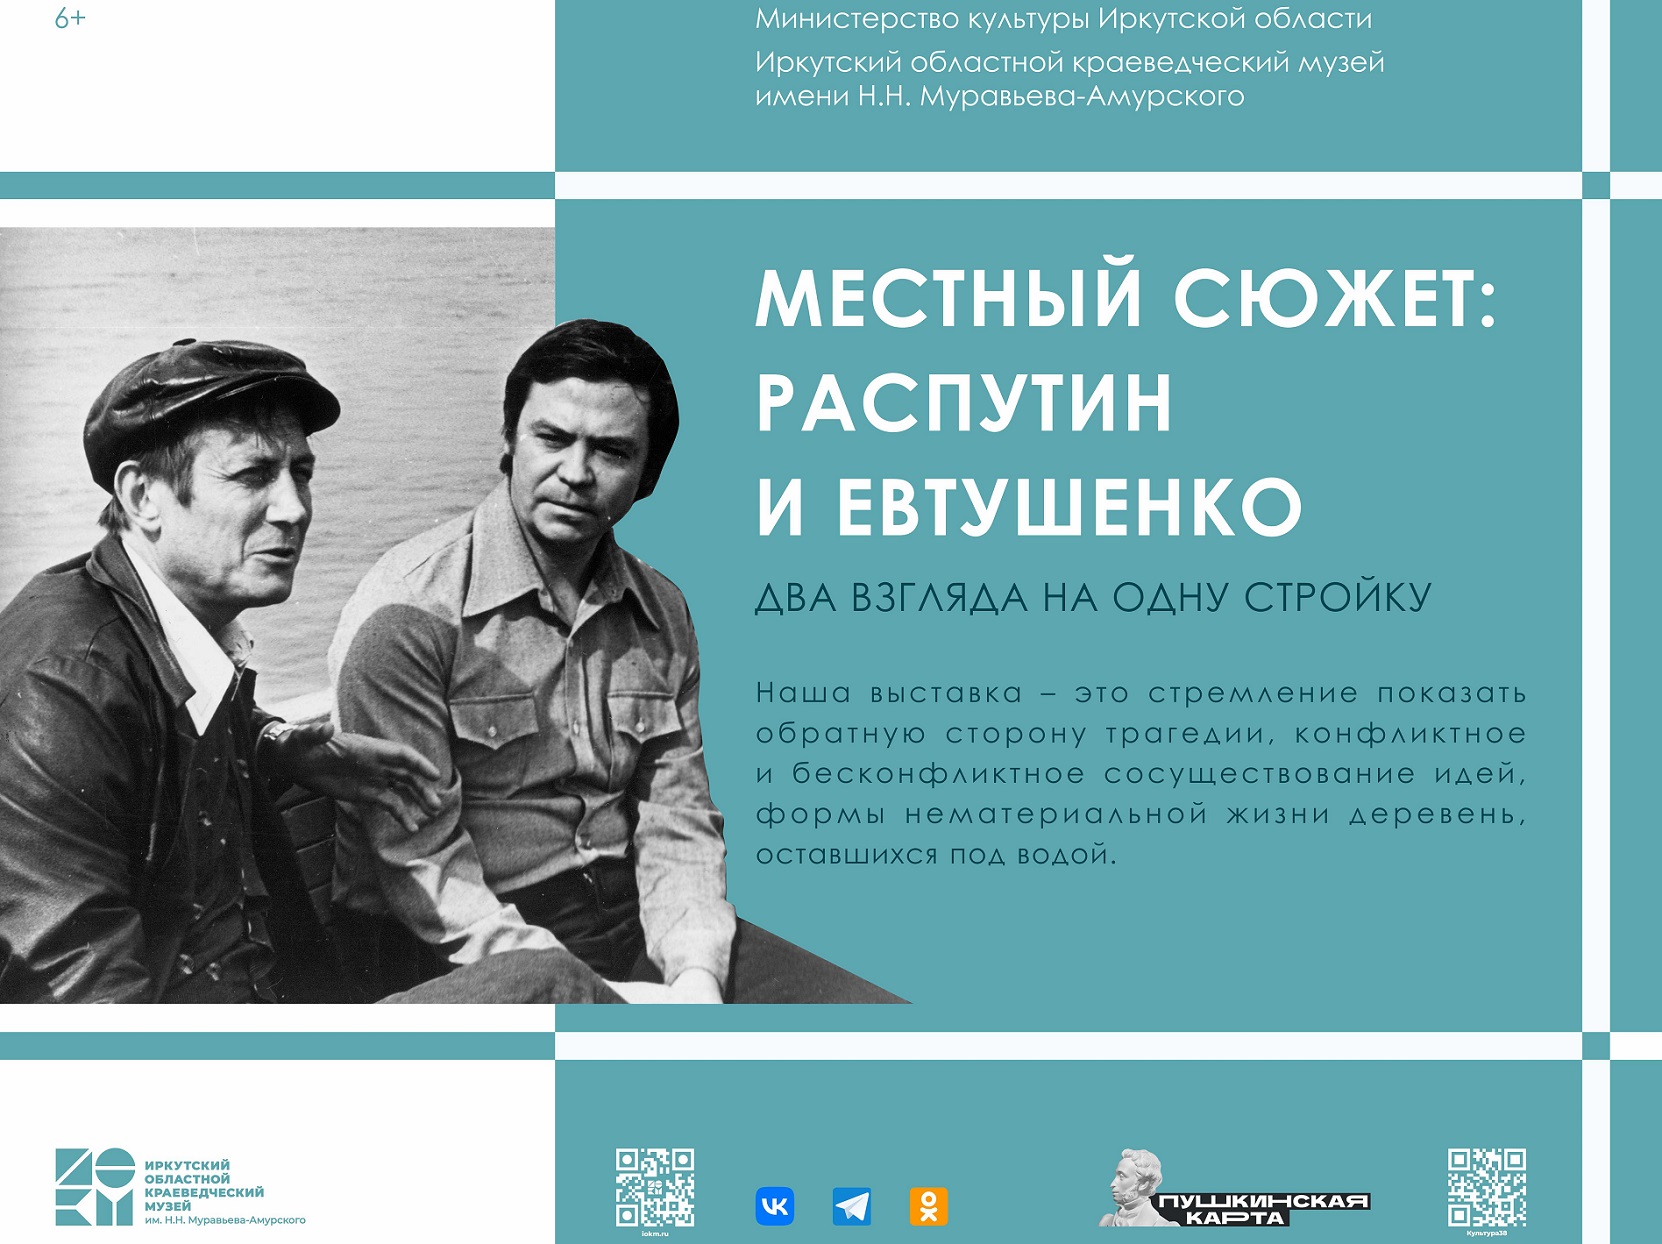 Выставка «Местный сюжет: Распутин и Евтушенко.  Два взгляда на одну стройку» начала работу в музее В.Г. Распутина